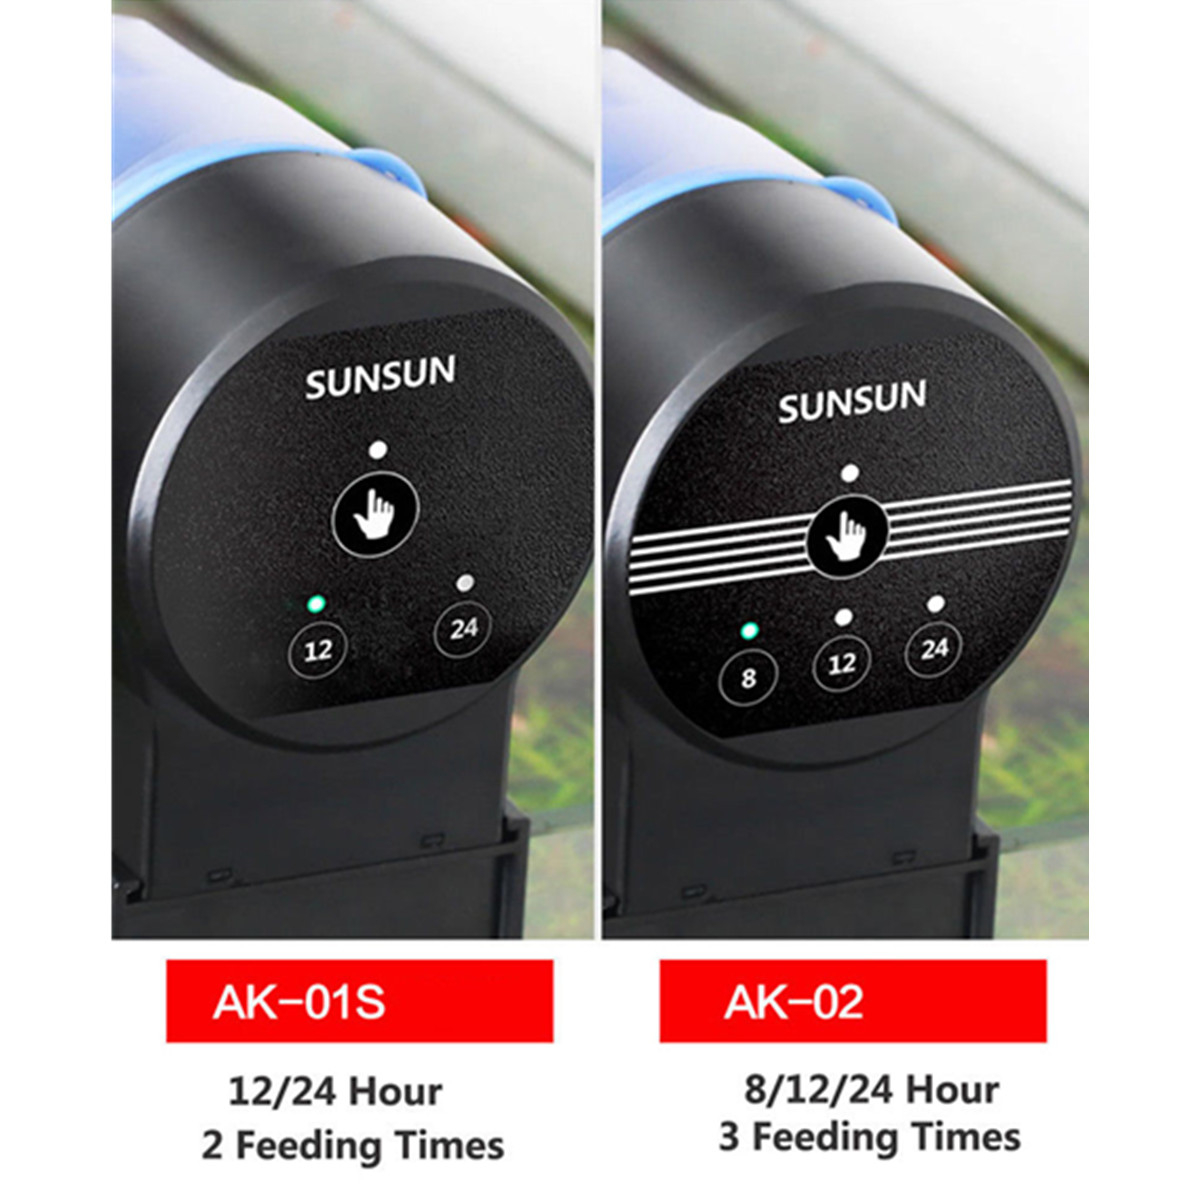 Sunsun-AK-01S0203-Aquarium-Automatic-Fish-Feeder-Timing-Control-Auto-Food-Dispenser-1443425-9